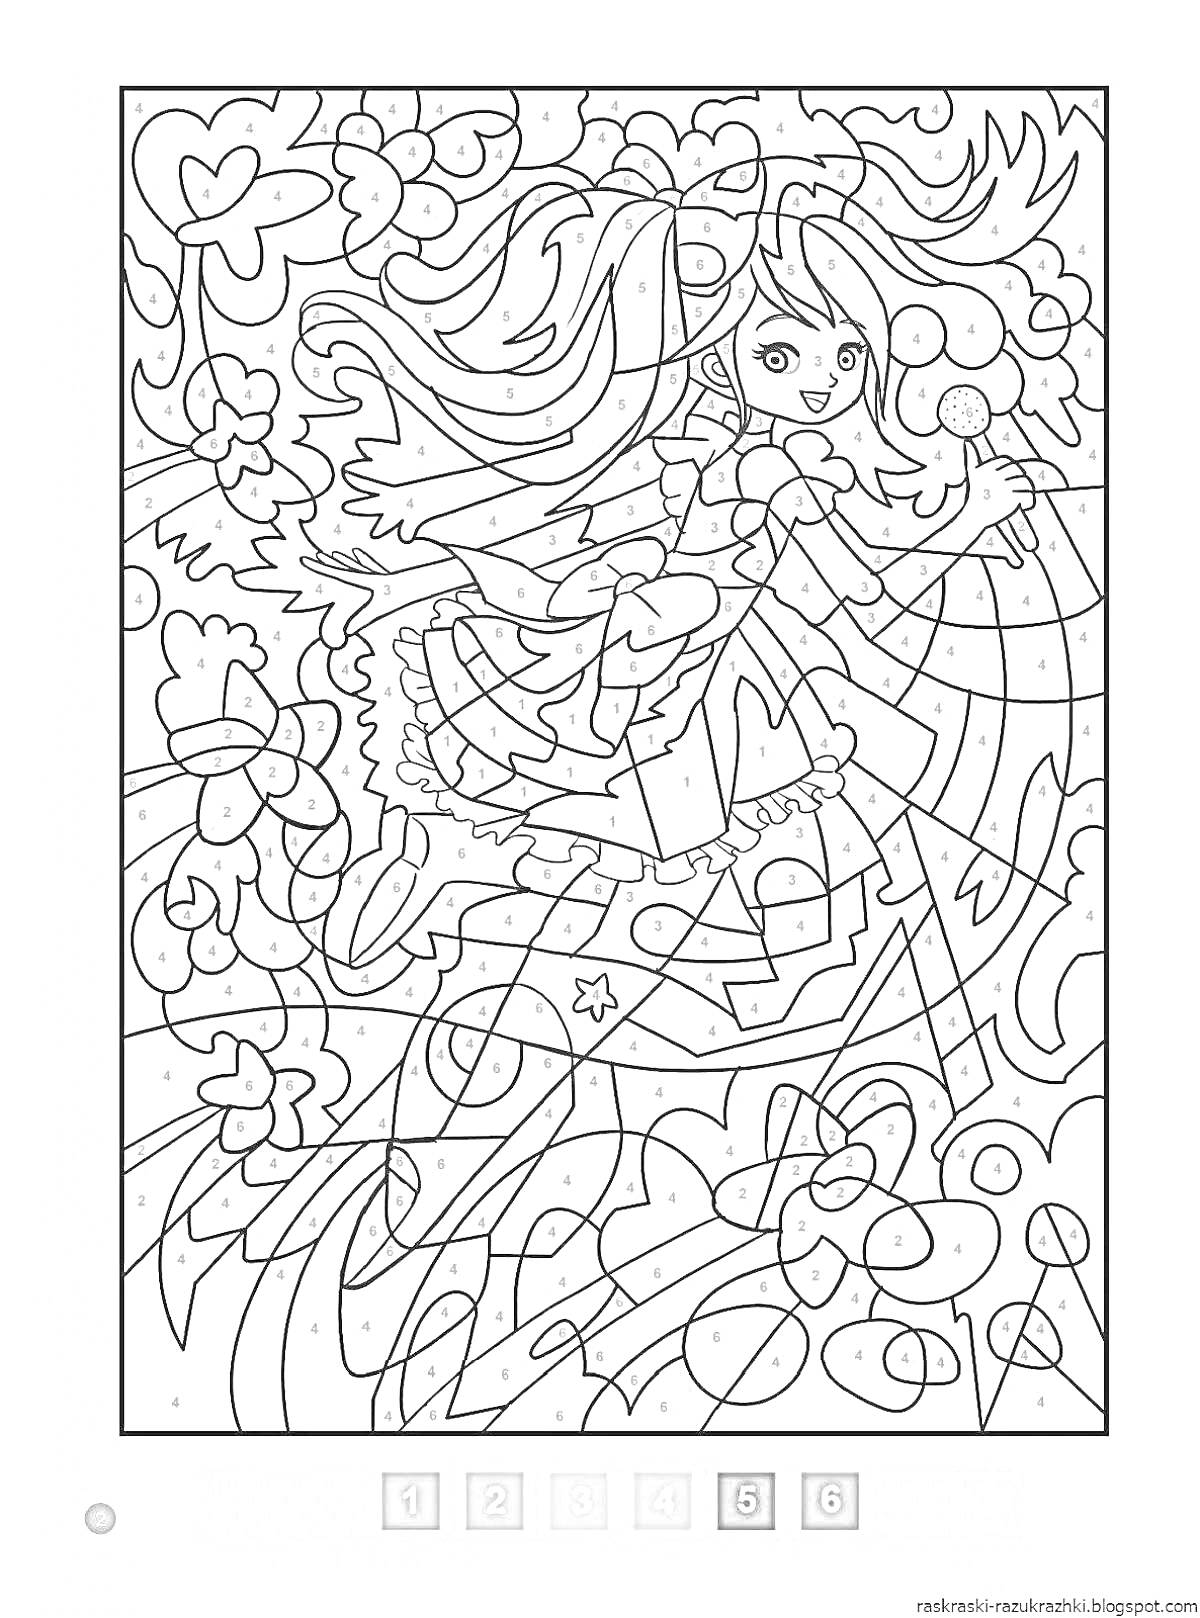 Раскраска Девушка с длинными волосами и крыльями феи, окруженная цветами и волнистыми линиями